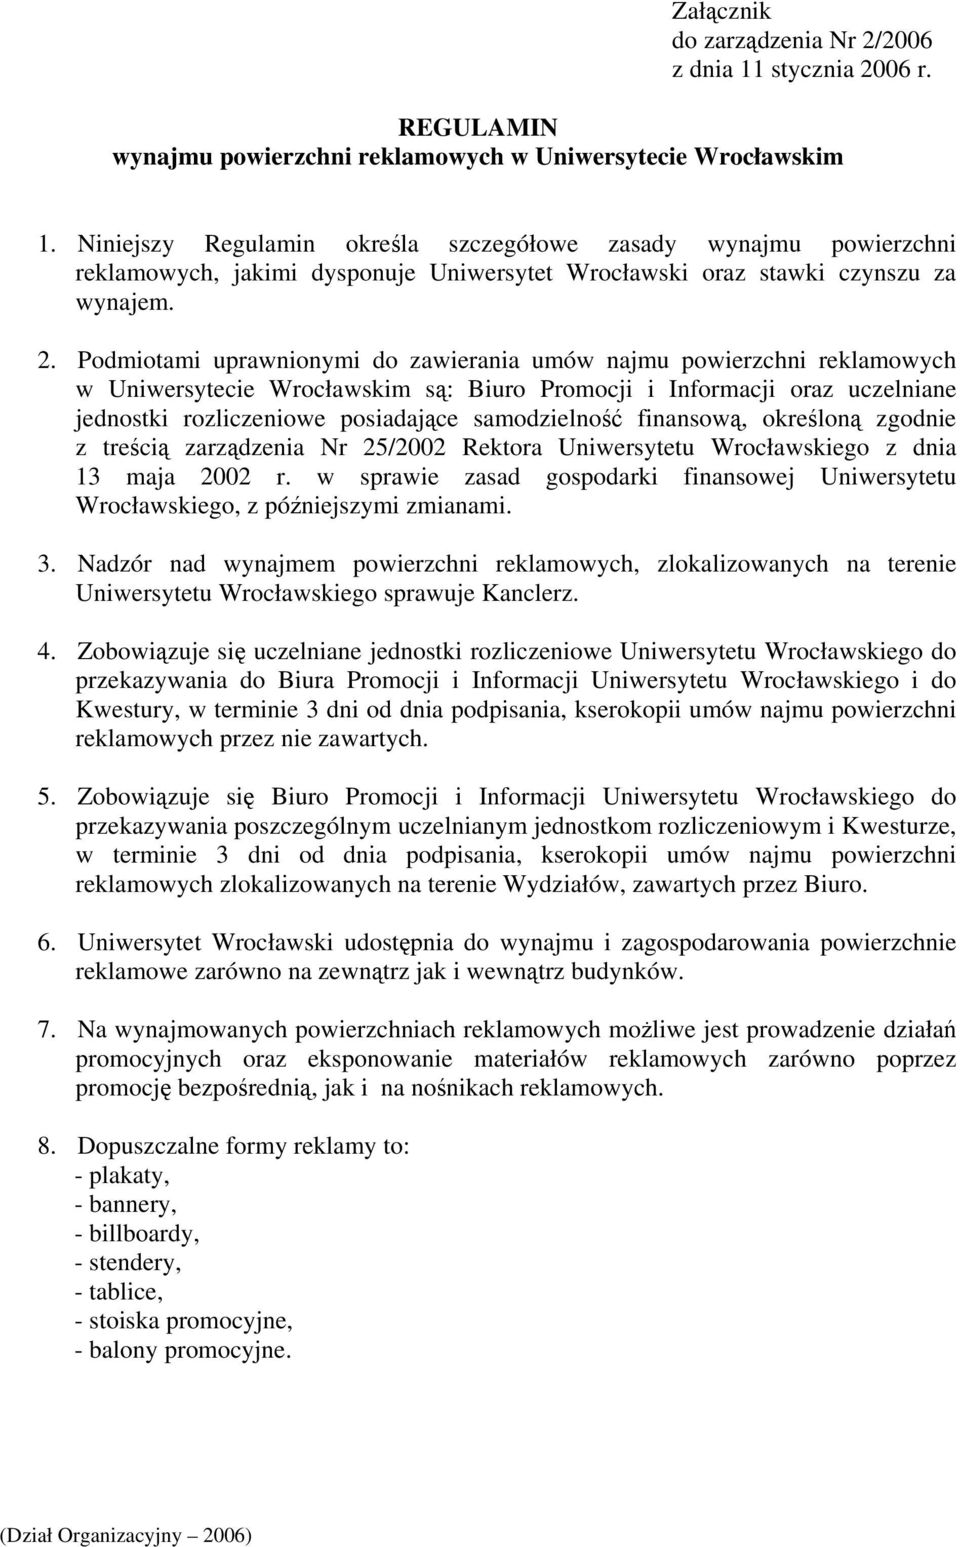 Podmiotami uprawnionymi do zawierania umów najmu powierzchni reklamowych w Uniwersytecie Wrocławskim są: Biuro Promocji i Informacji oraz uczelniane jednostki rozliczeniowe posiadające samodzielność